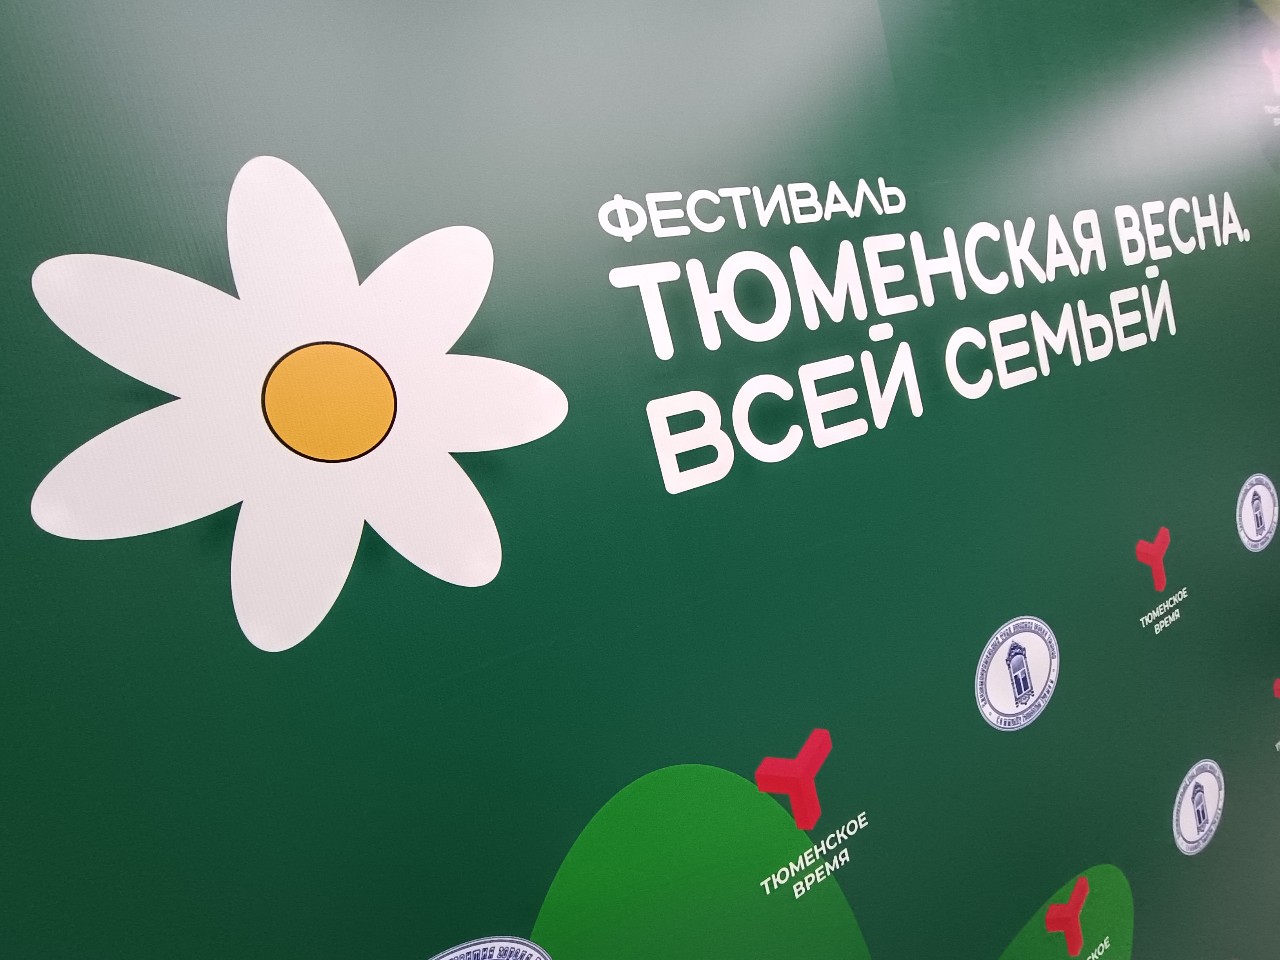 Викторина на празднике "Тюменская весна. Всей семьей" пройдет в новом формате